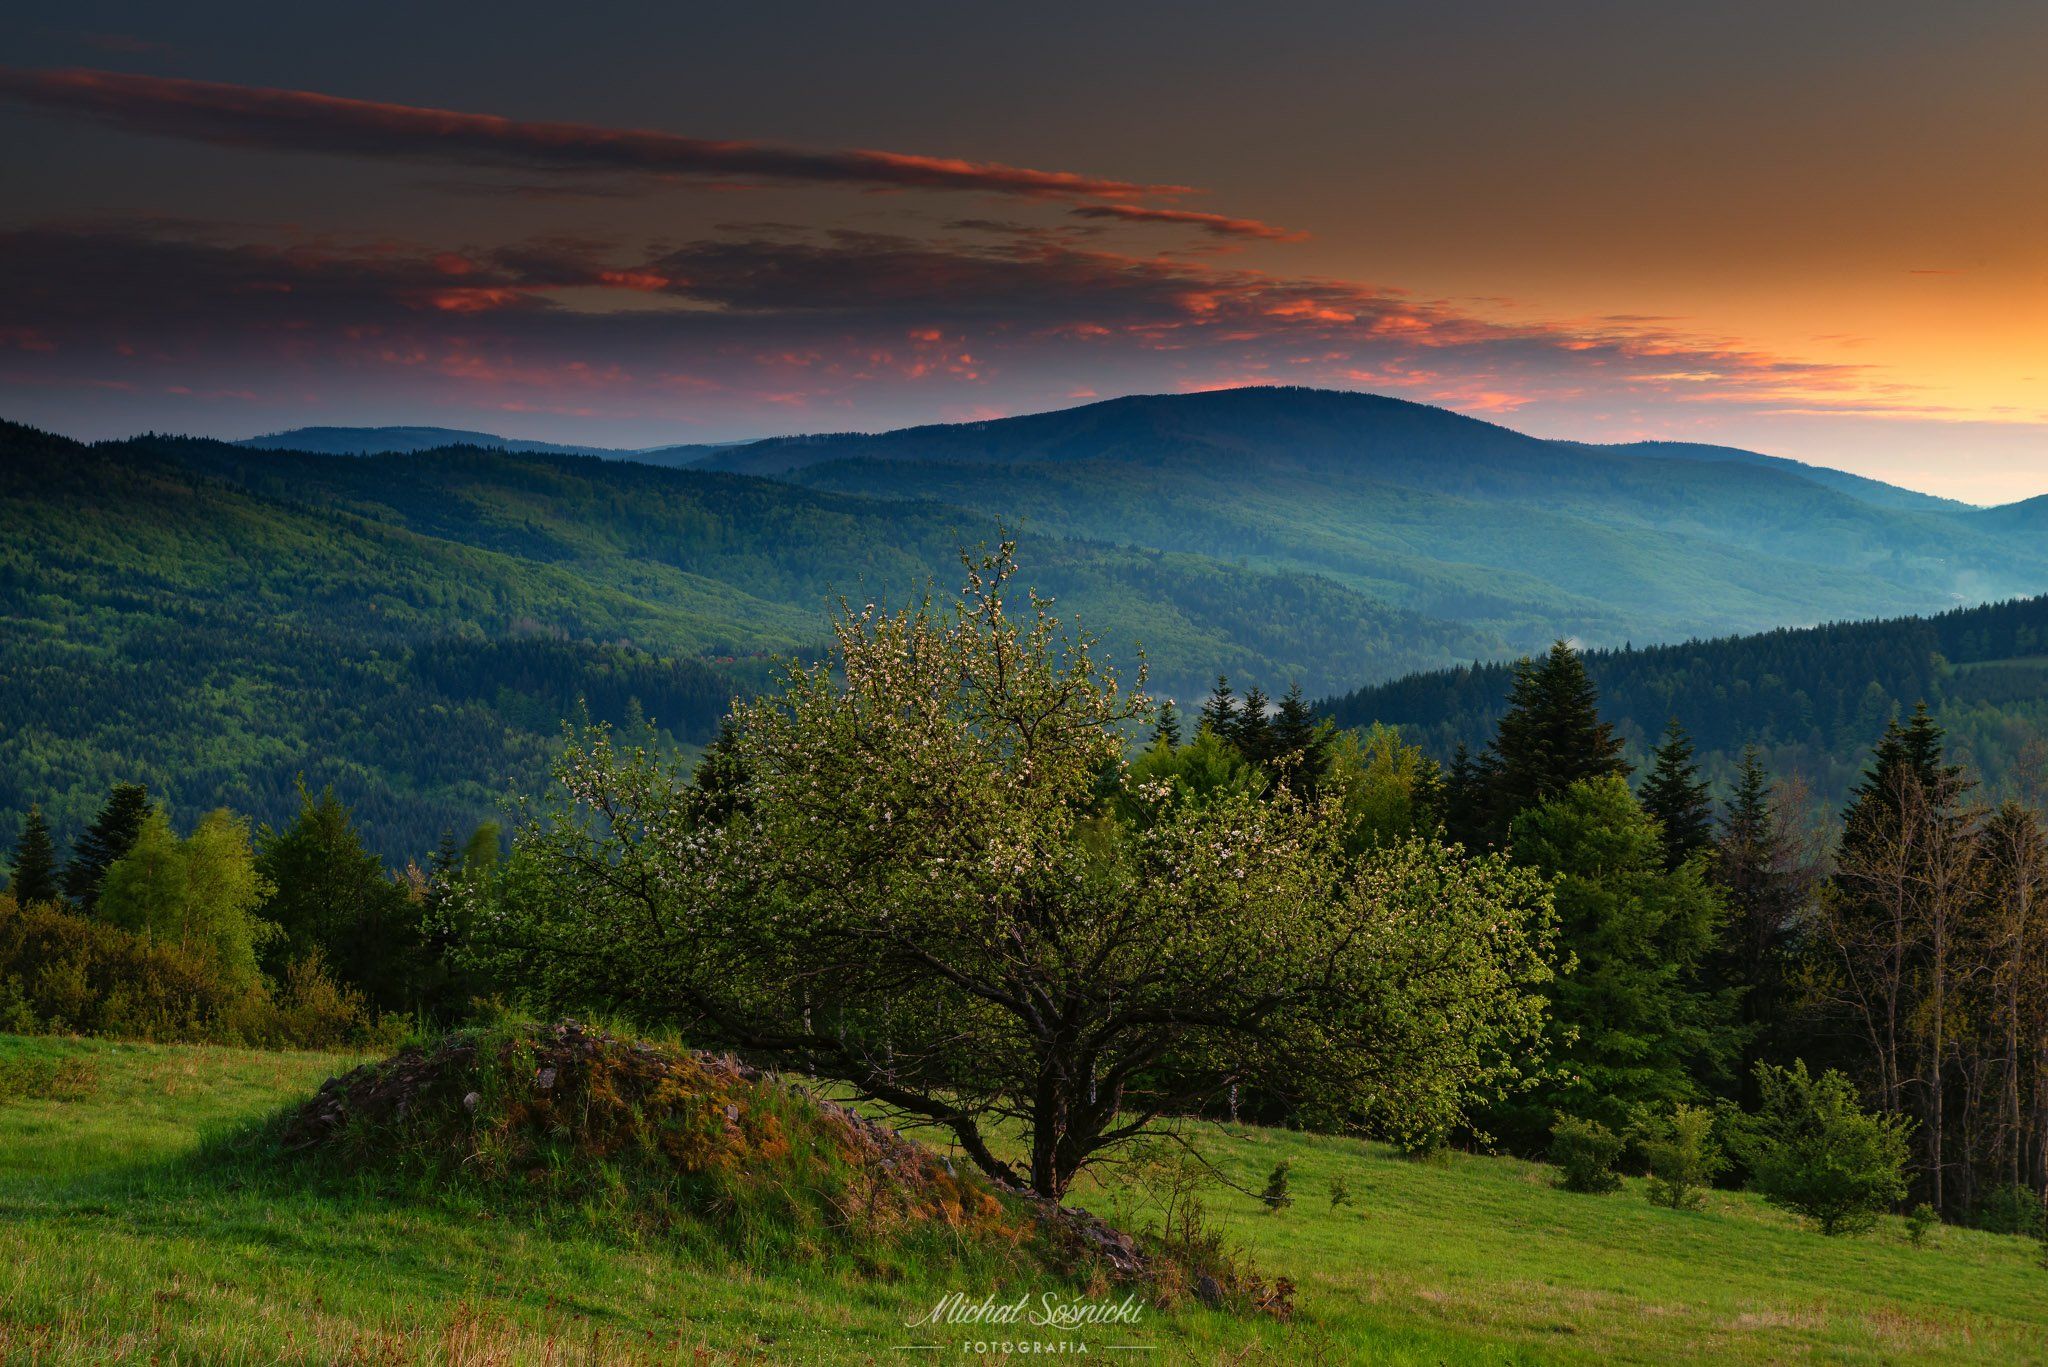 #sunset #mountains #tree #color #pentax #benro #nature #amazing, Michał Sośnicki